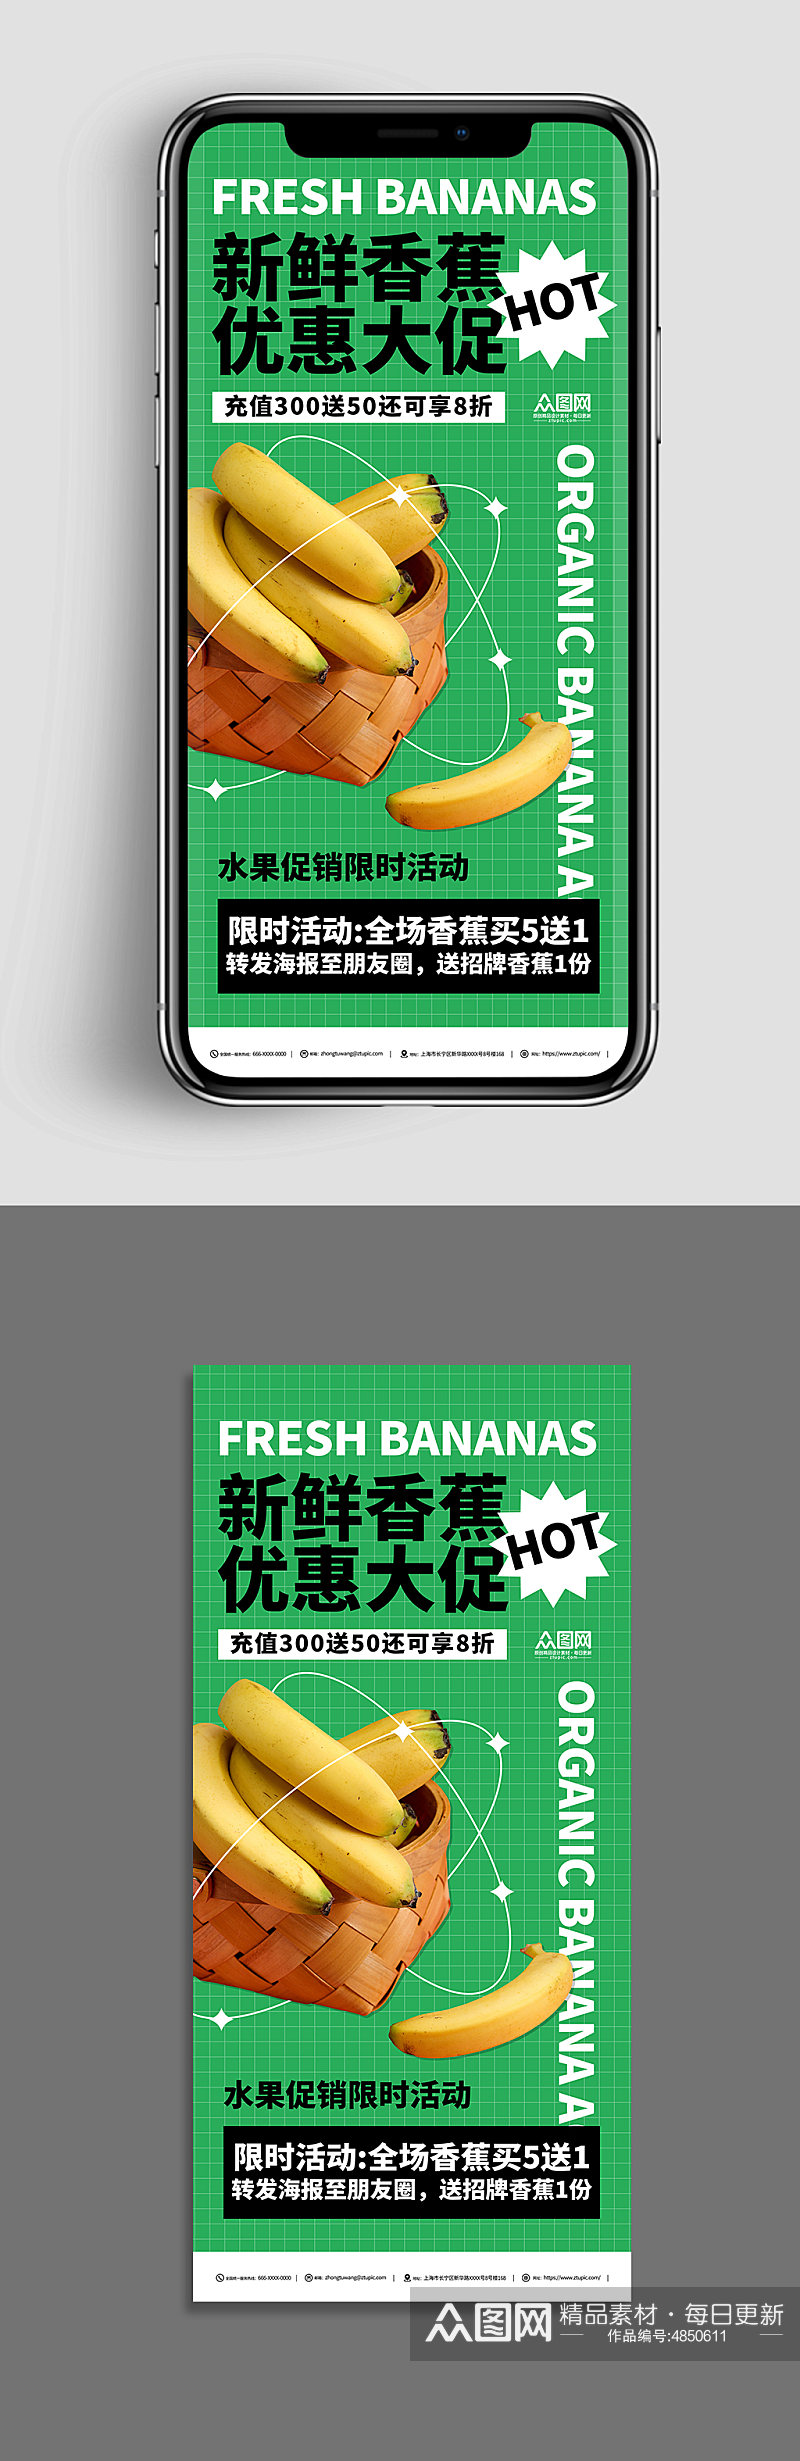 新鲜香蕉水果绿色促销海报素材